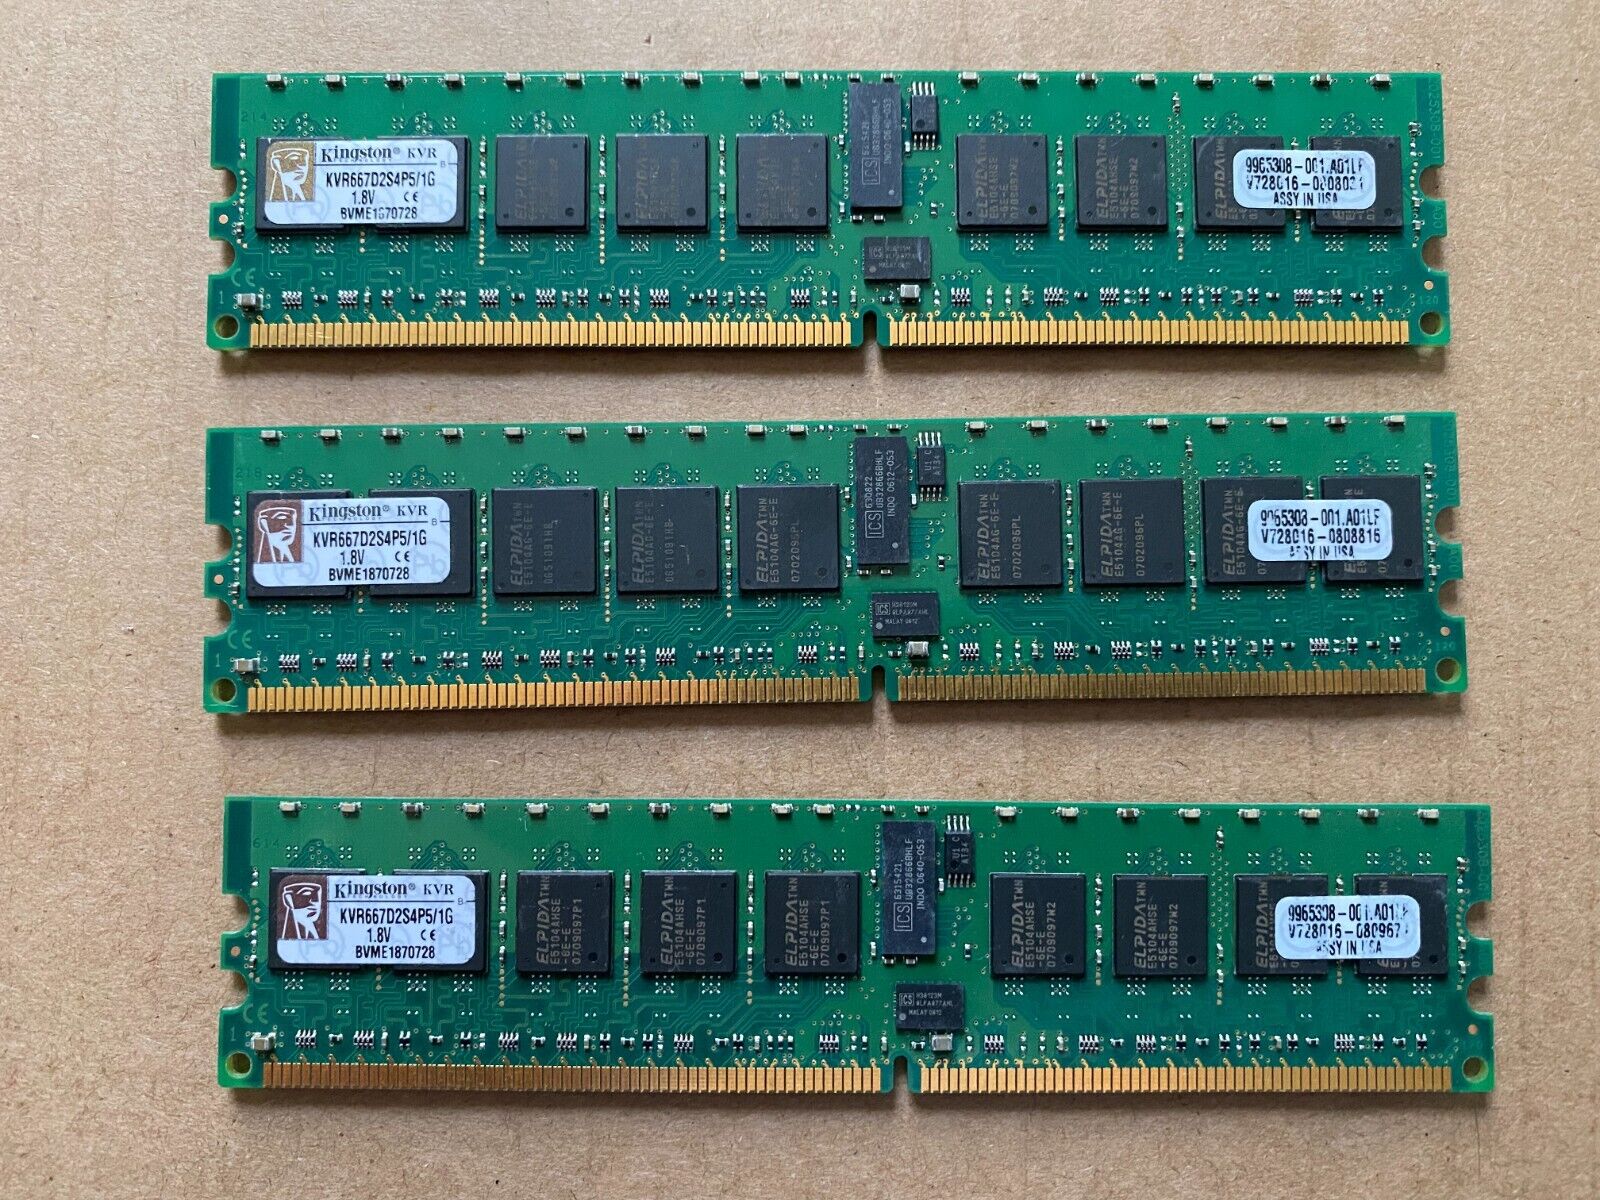 Kingston KVR 3GB (3x1GB) KVR667D2S4P5/1G 240PIN DDR2 667 PC5300 DIMM Memory RAM